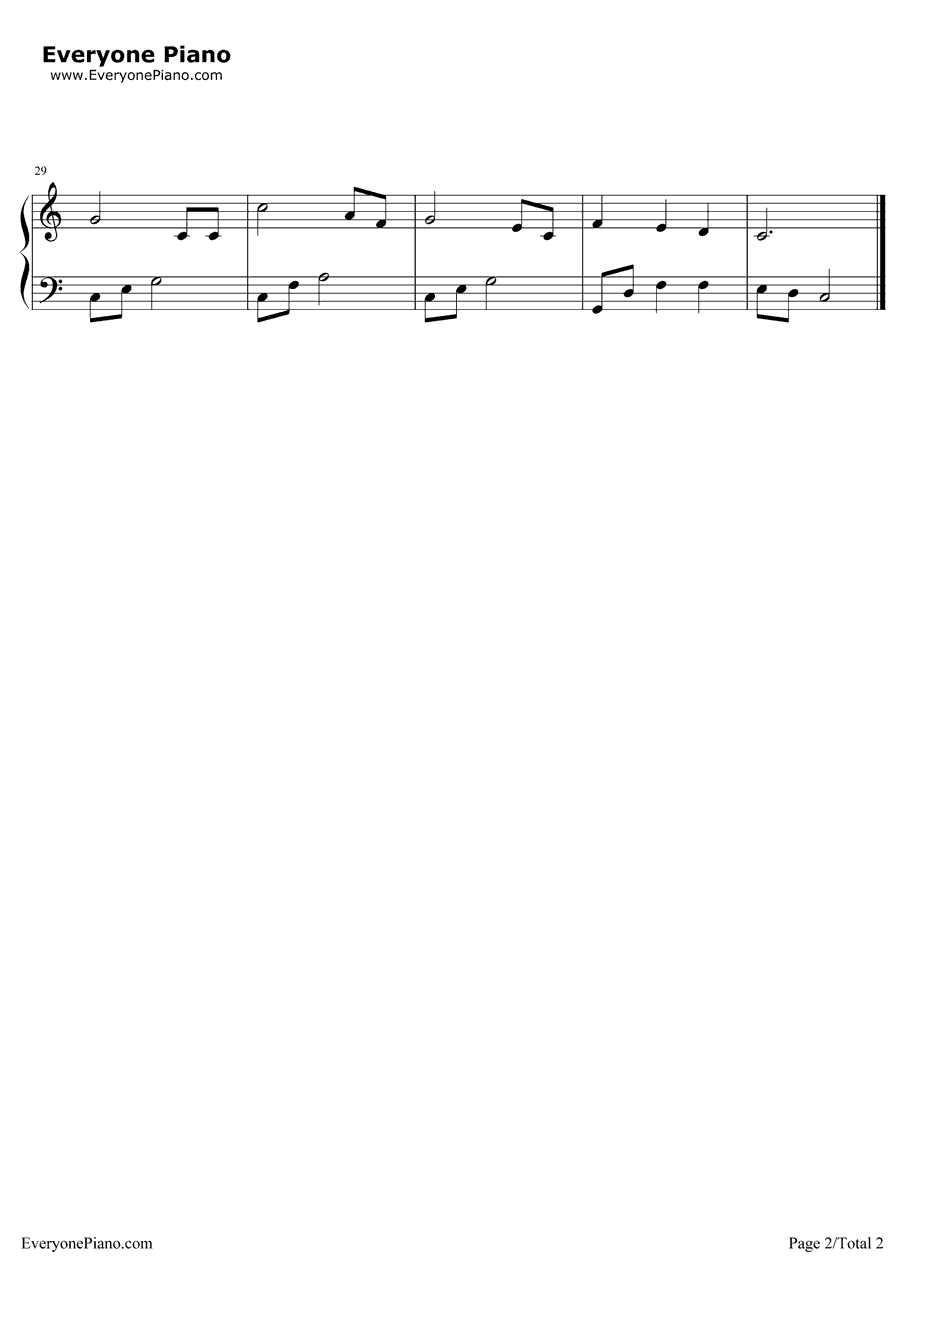 摇篮曲钢琴谱-勃拉姆斯-EOP魔鬼训练营练习曲2